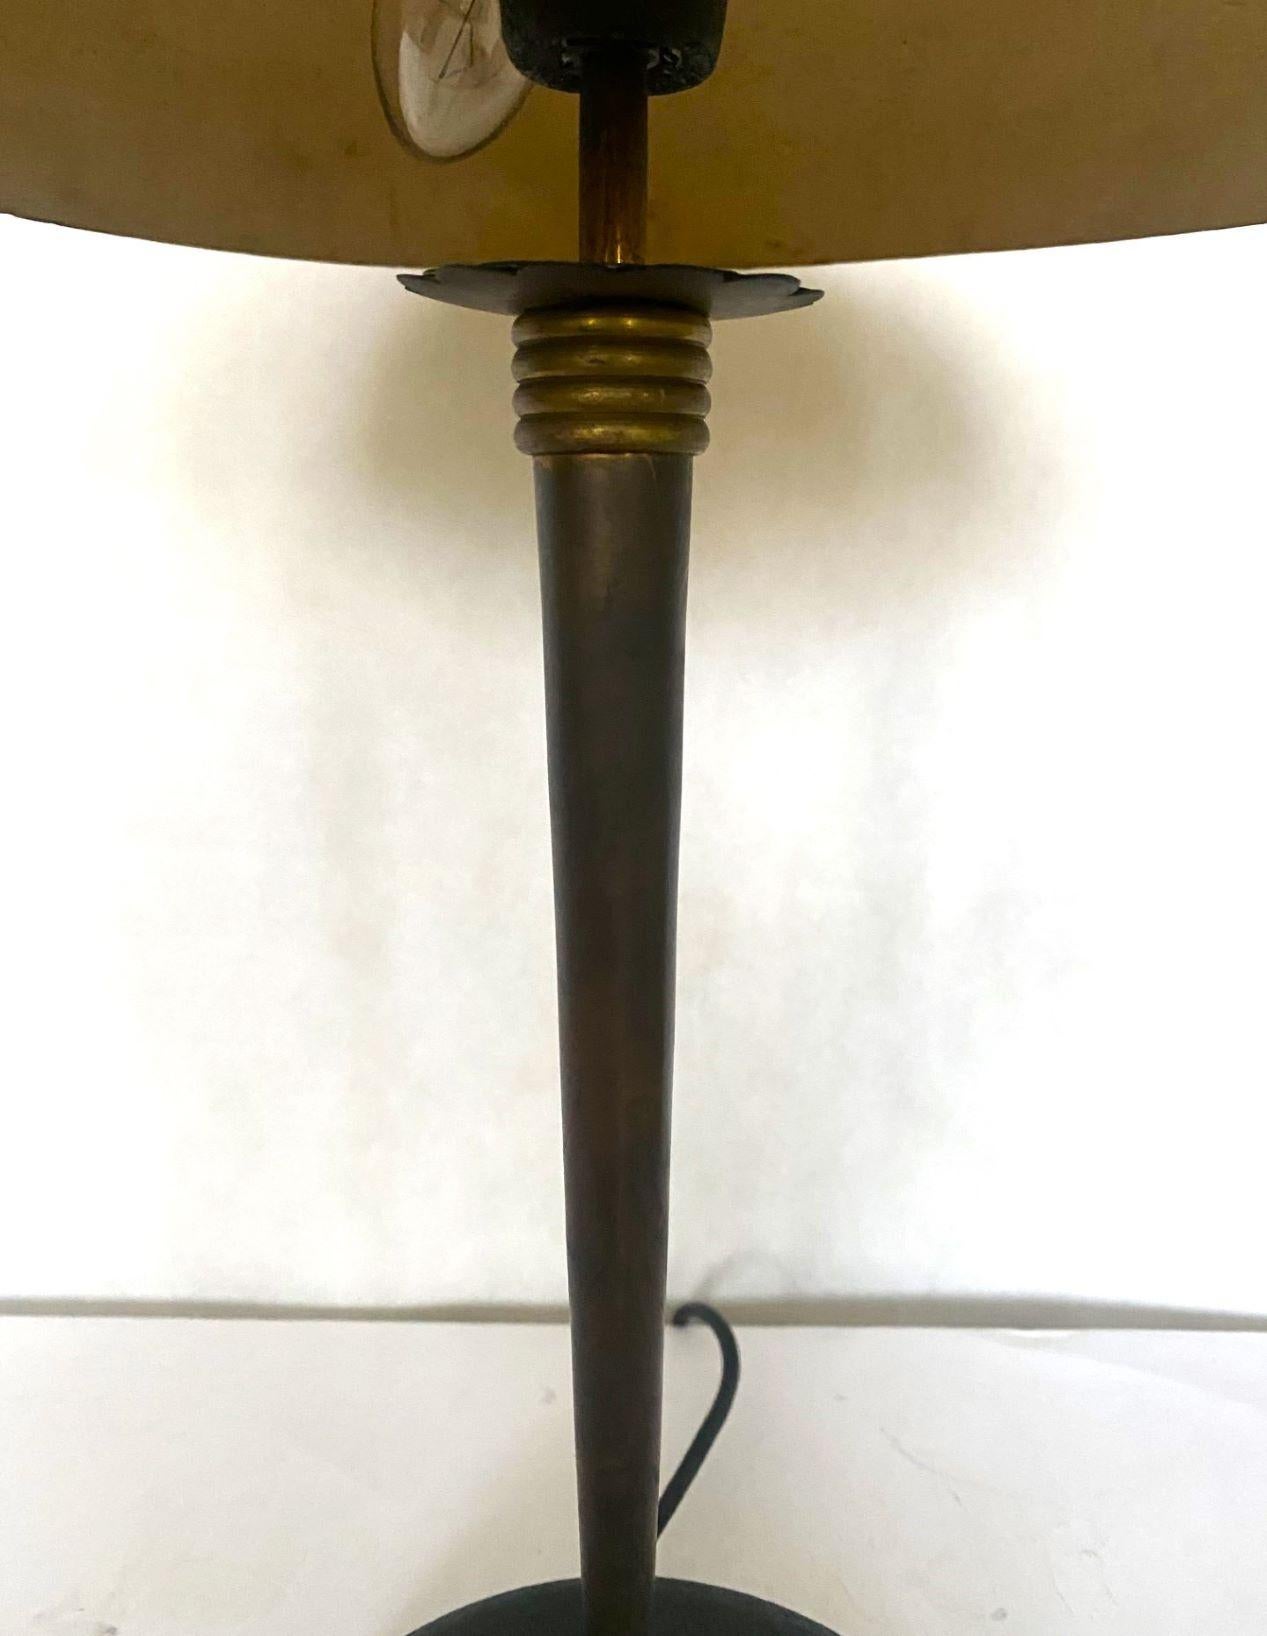 Midcentury Stilnovo Desk or Table Lamp Brass Black Enameled Metal, Iataly, 1950s For Sale 4